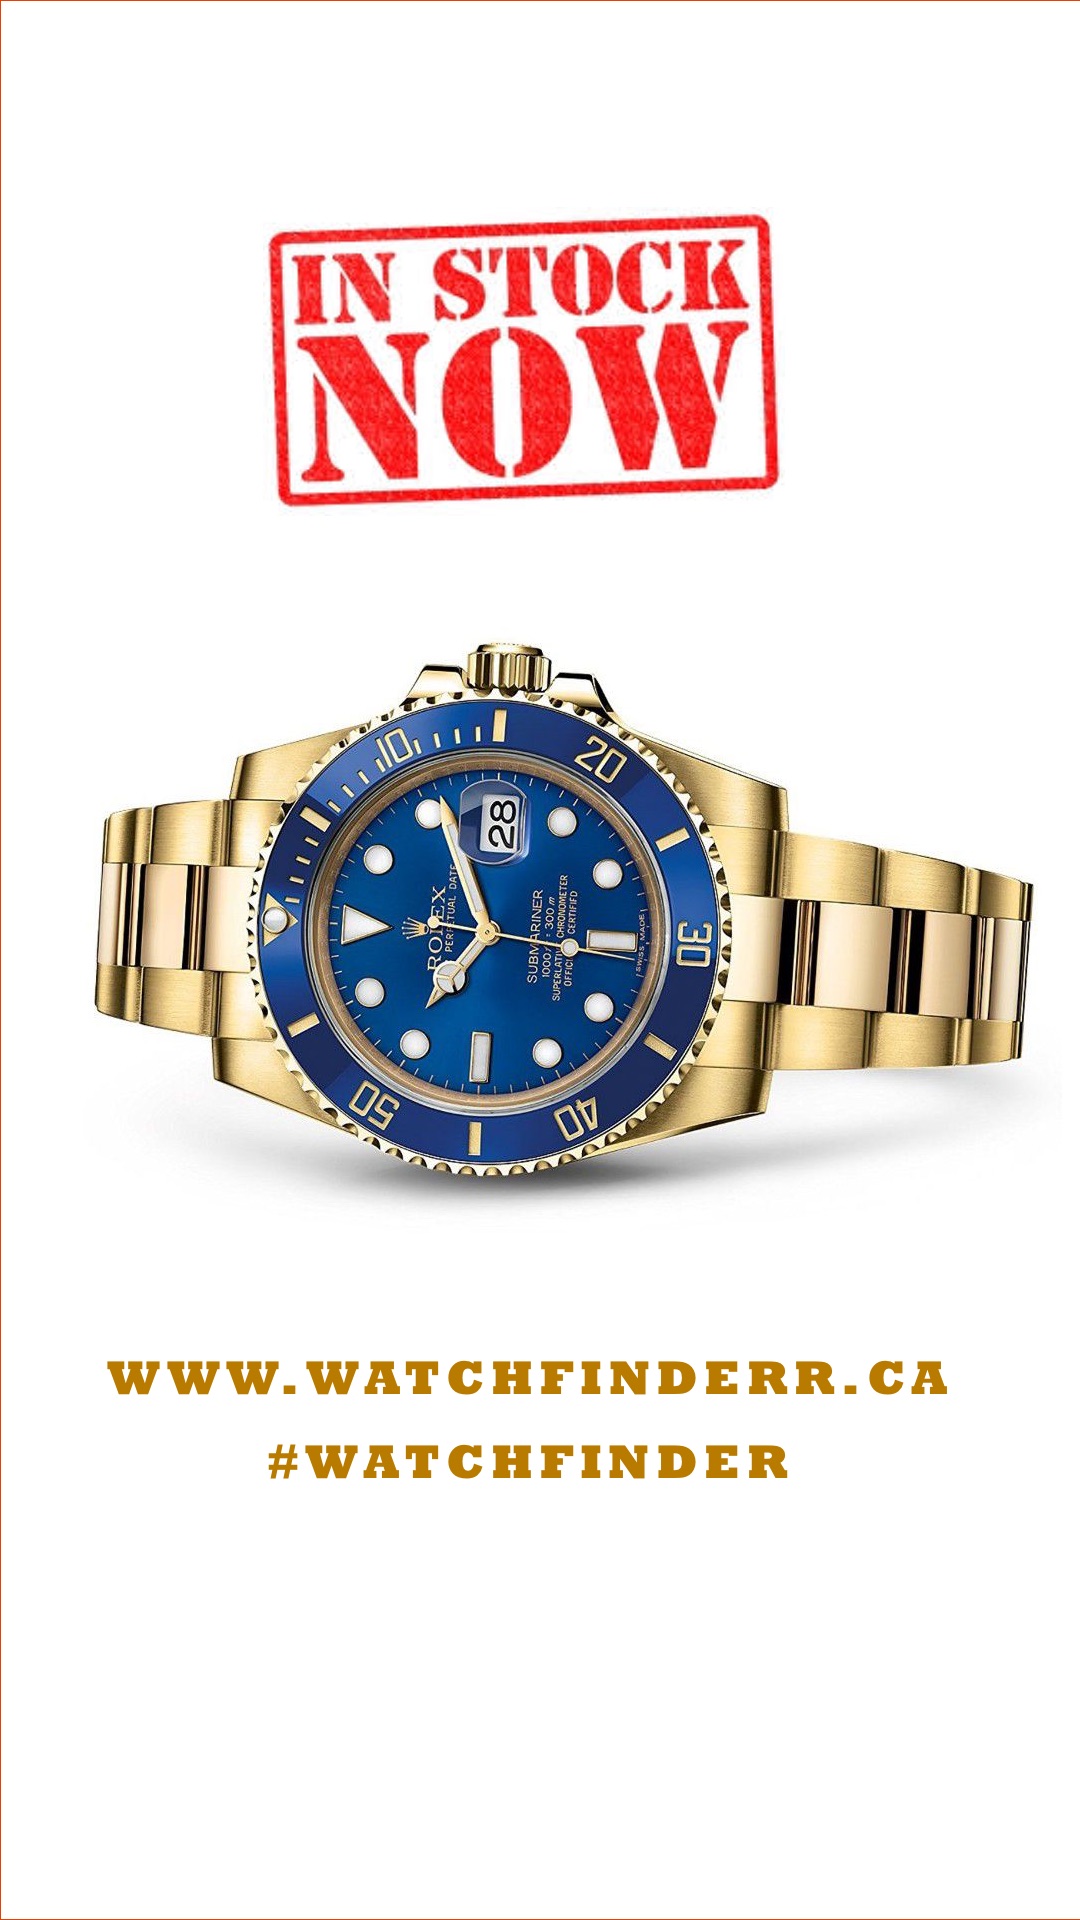 Watchfinder Toronto (416)928-0128